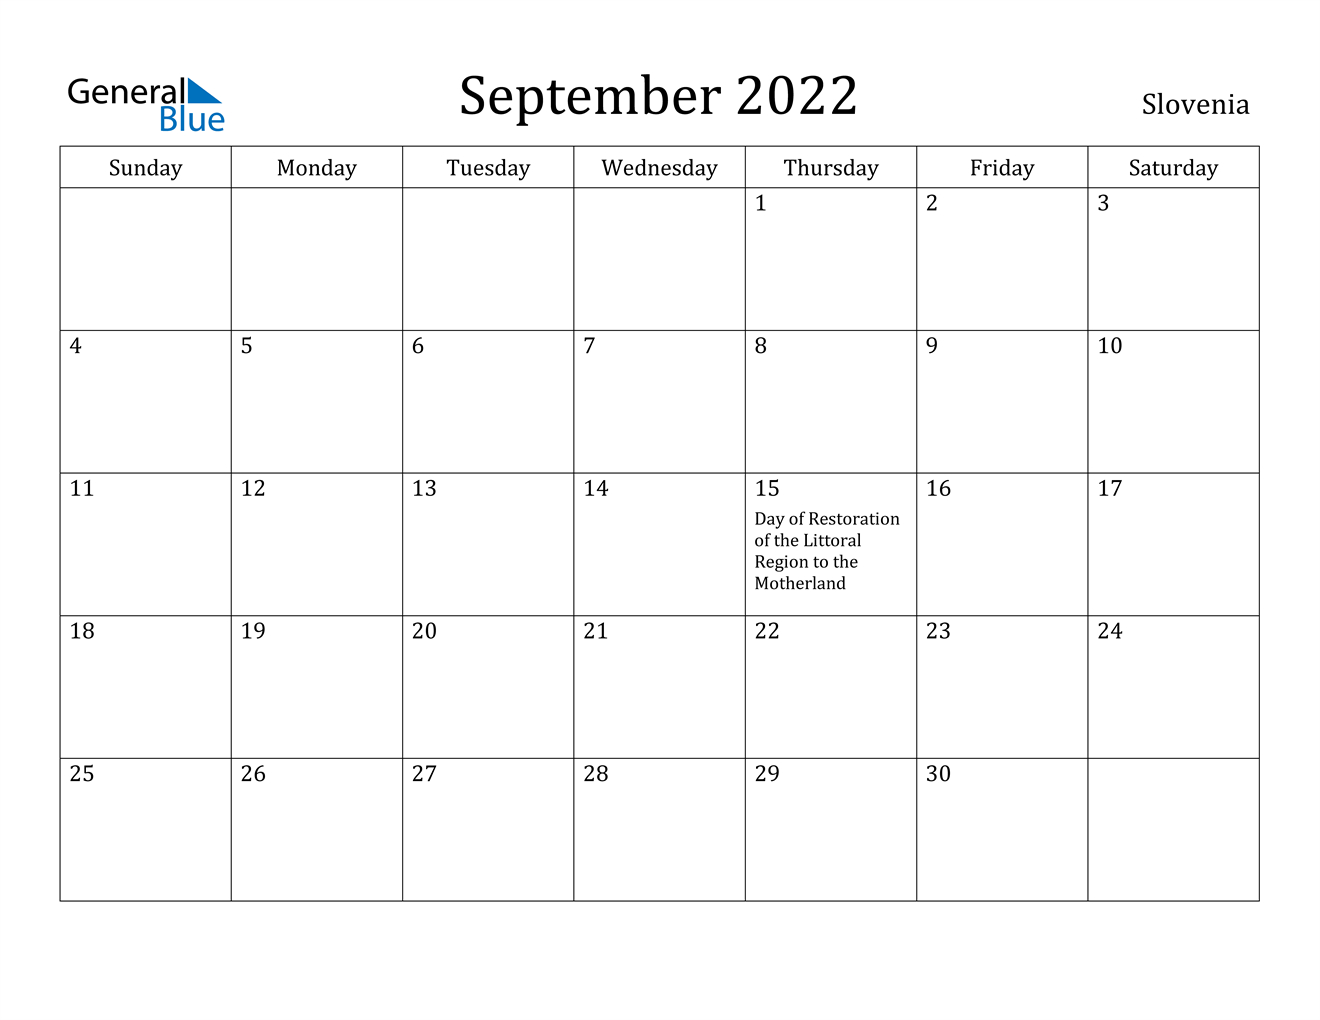 Collect Sept Oct 2022 Calendar